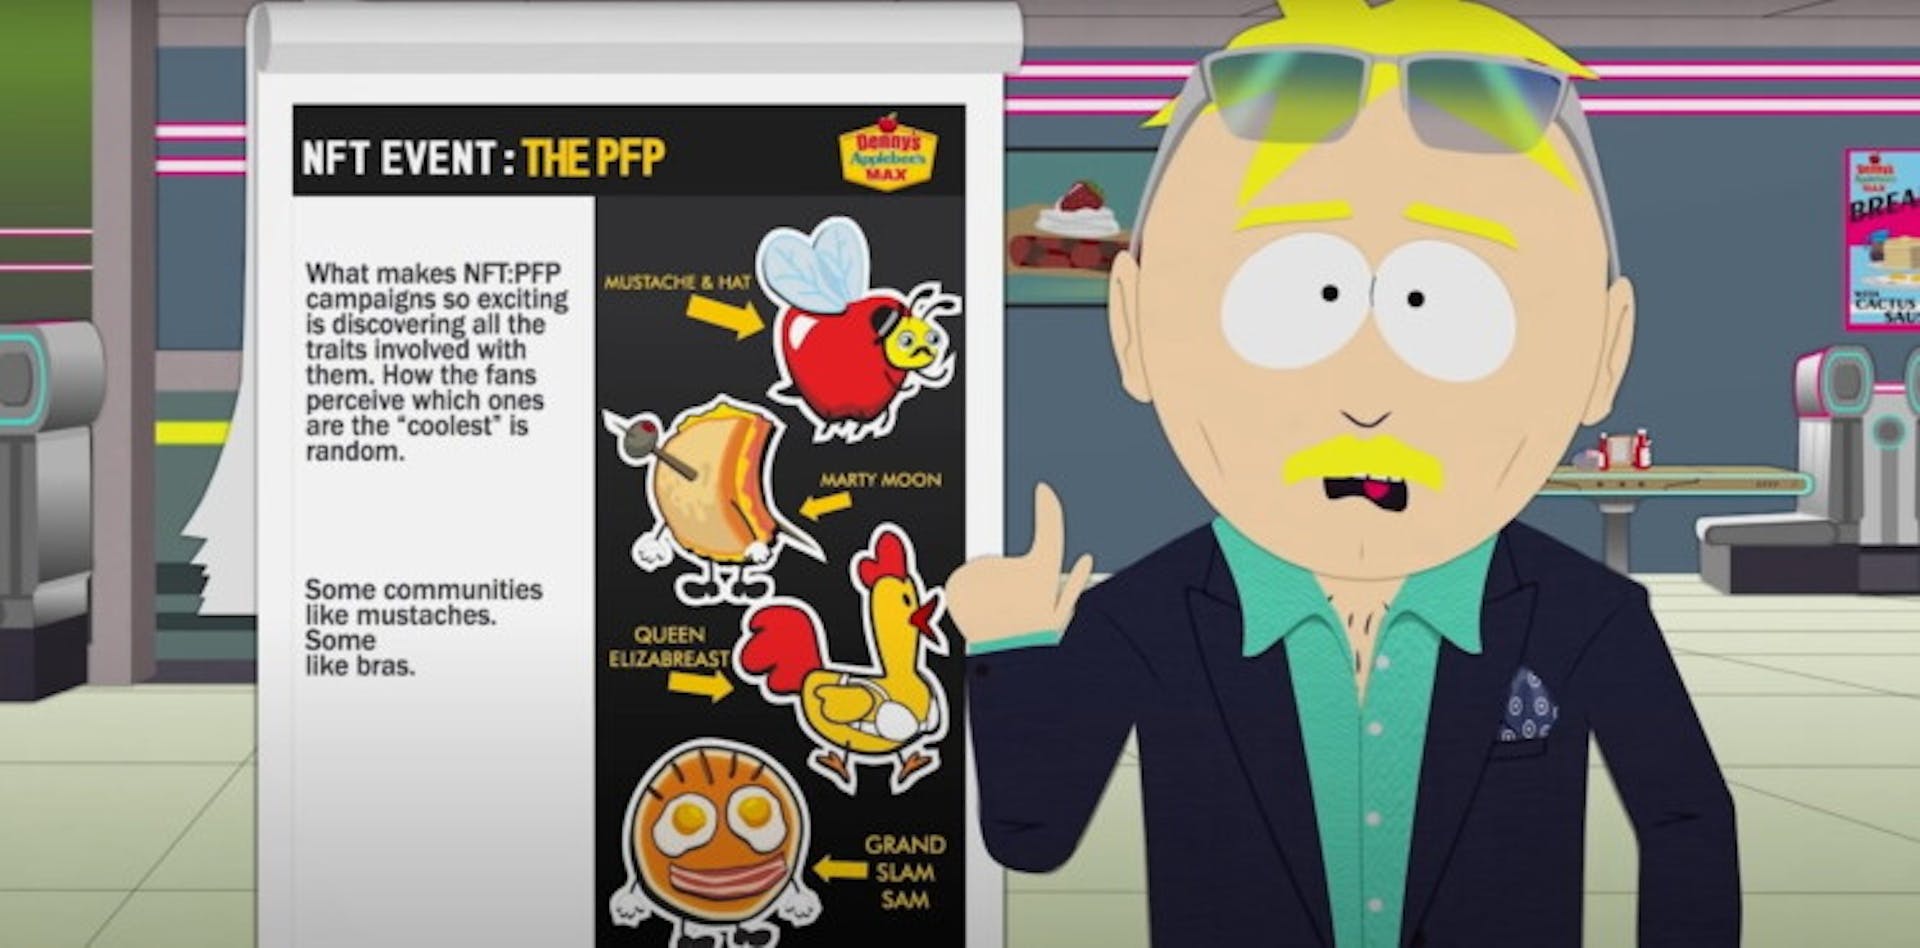 Leopold "Butters" Stotch convence a una cadena de comida rápida para que lance el NFT. Fotograma de un episodio especial de "South Park"